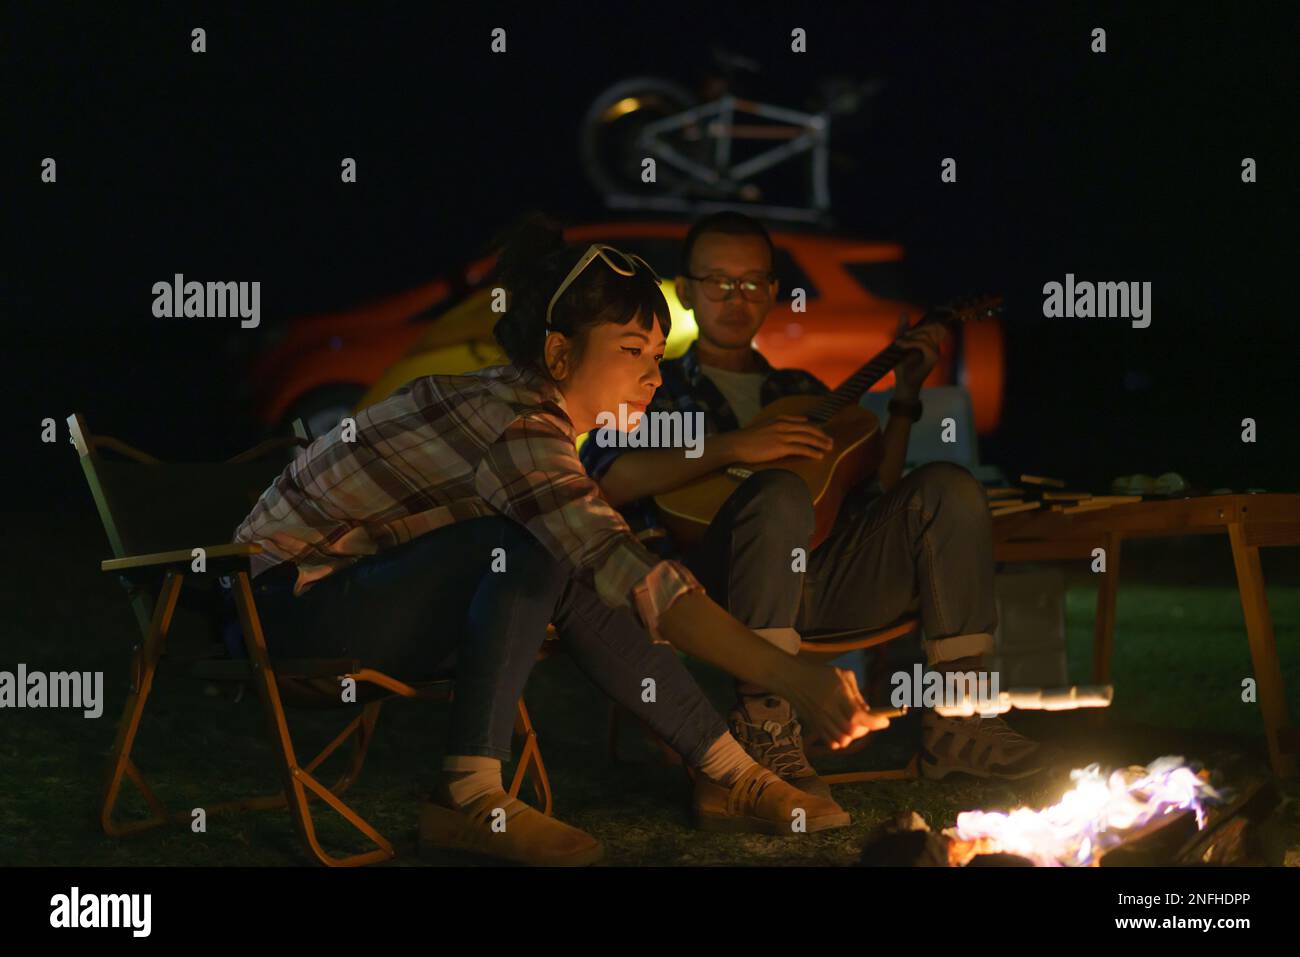 Asiatische Frau, die Marshmallows anstoßt, während ihr Freund am Lagerfeuer Gitarre spielt, wo sie ihre Zelte für das Camping am See nachts aufstellen. Stockfoto